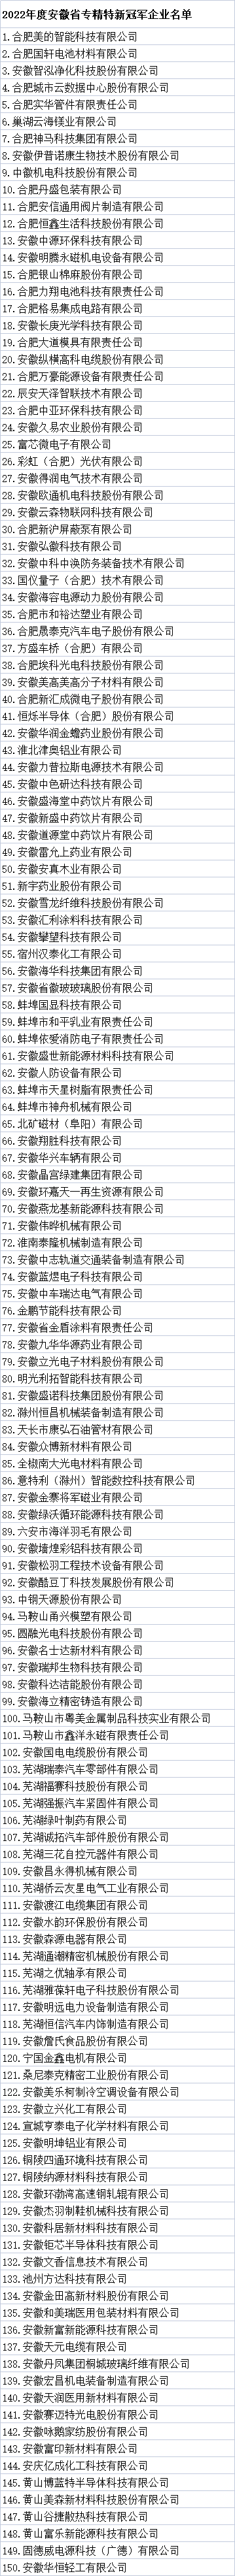 安徽省专精特新冠军企业名单